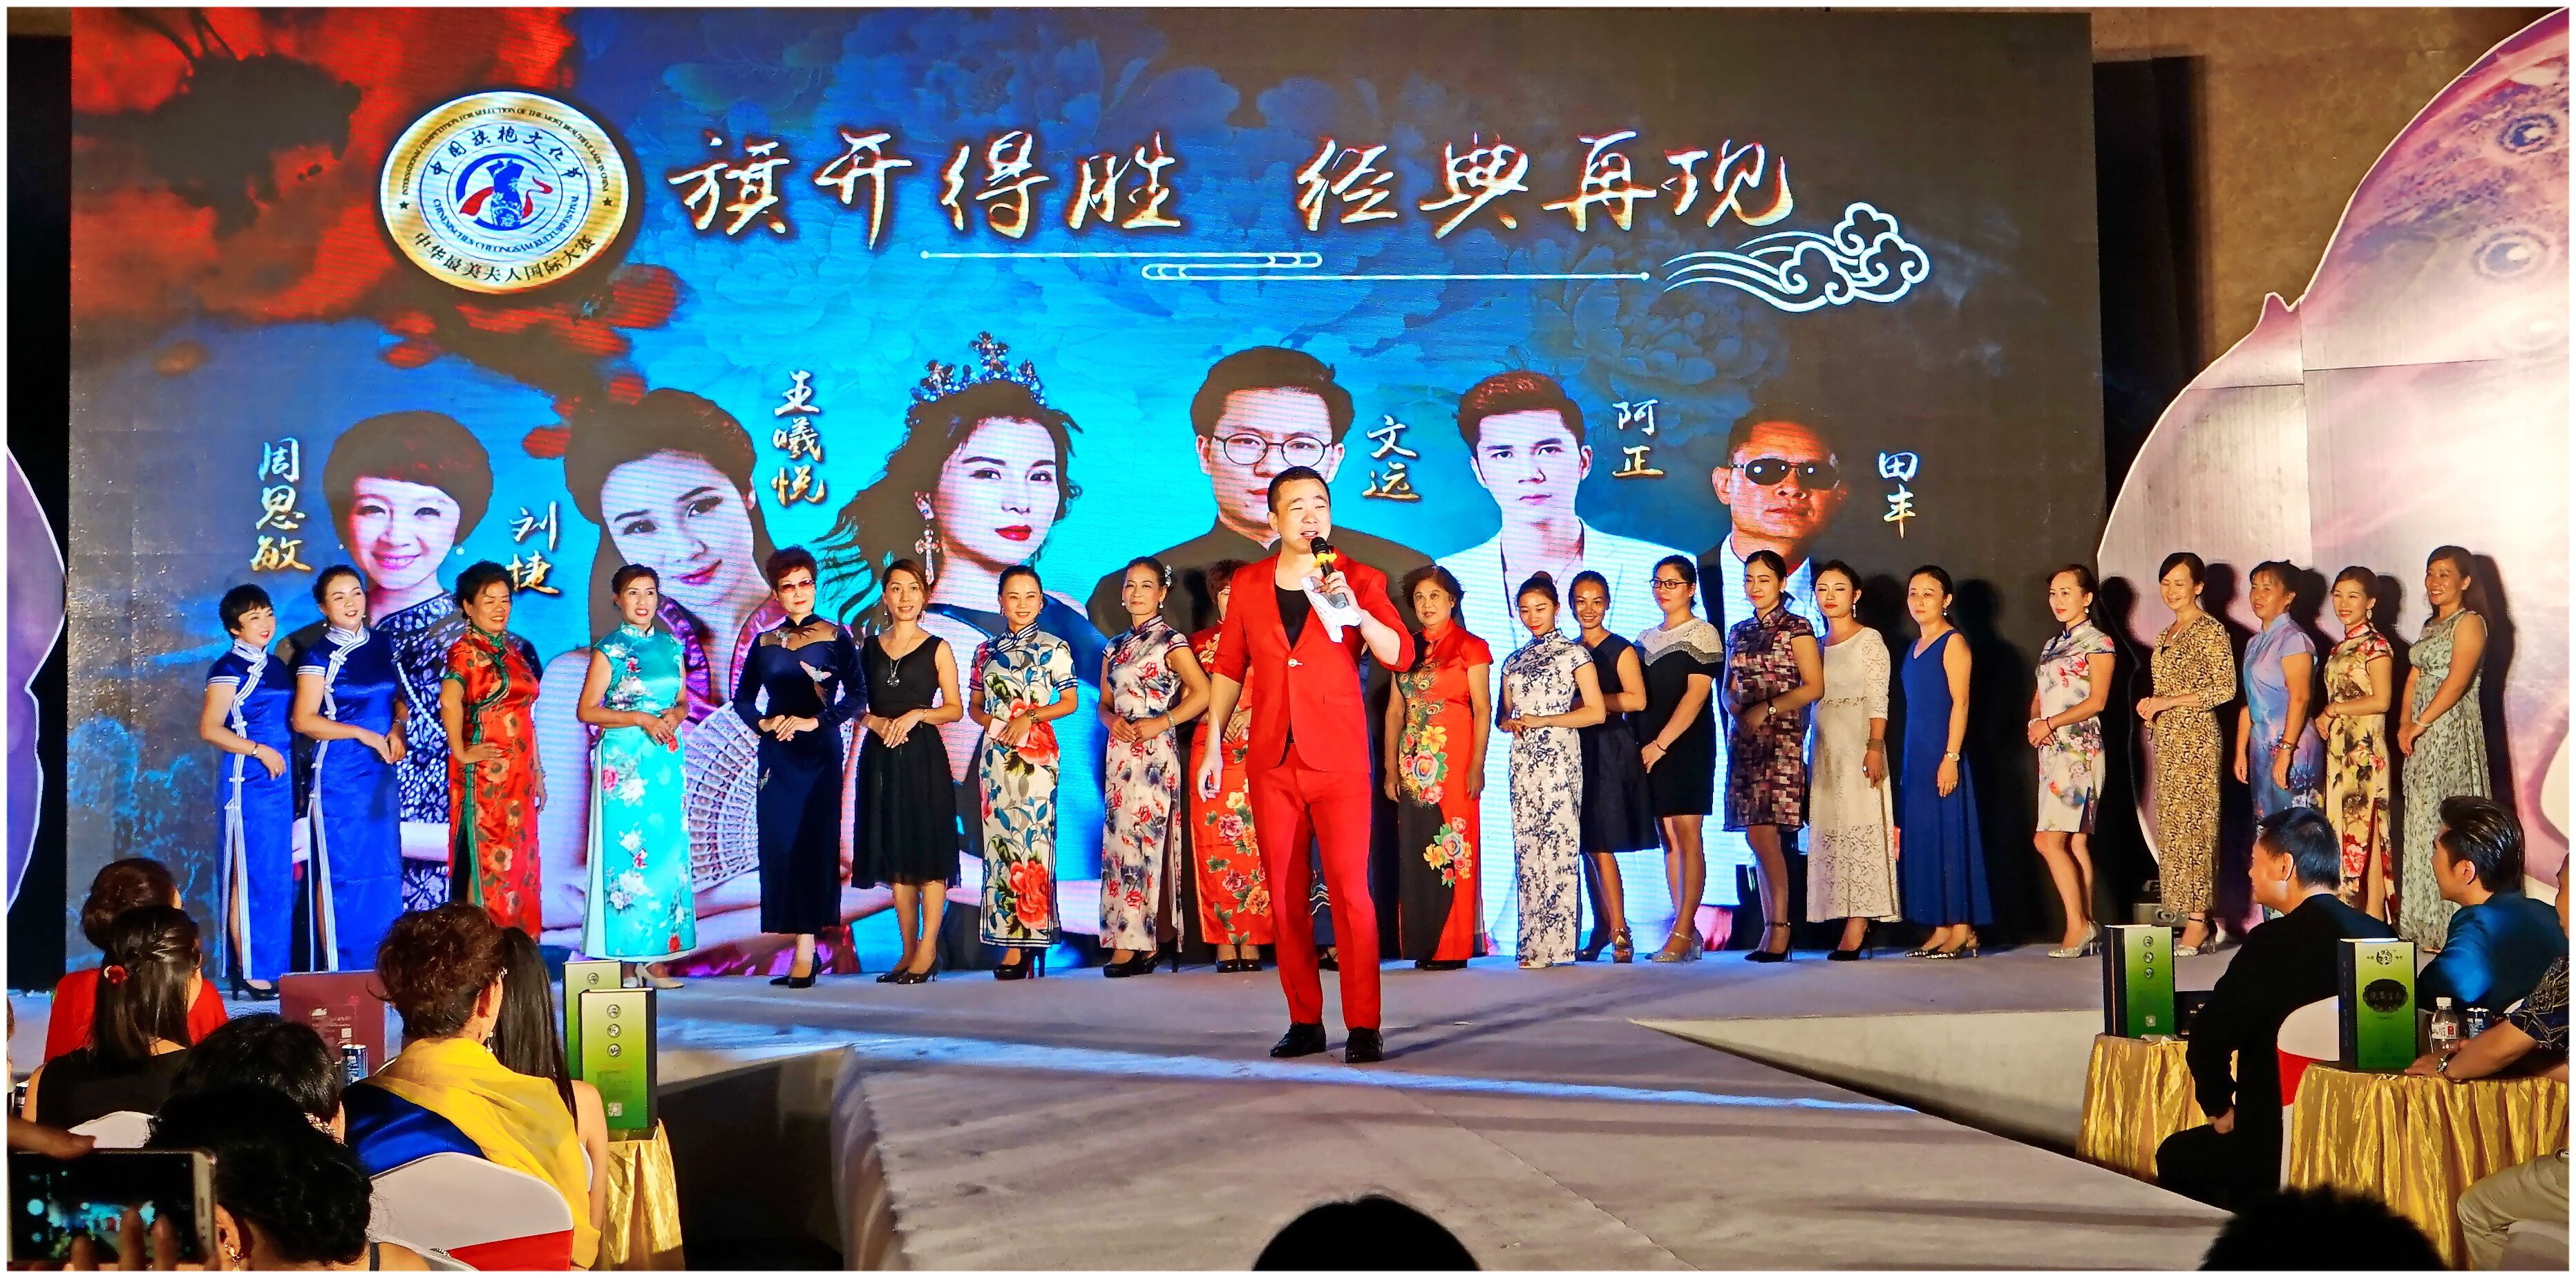 中国旗袍文化节《中华最美夫人》国际大赛全国新闻发布会 于佛山起航